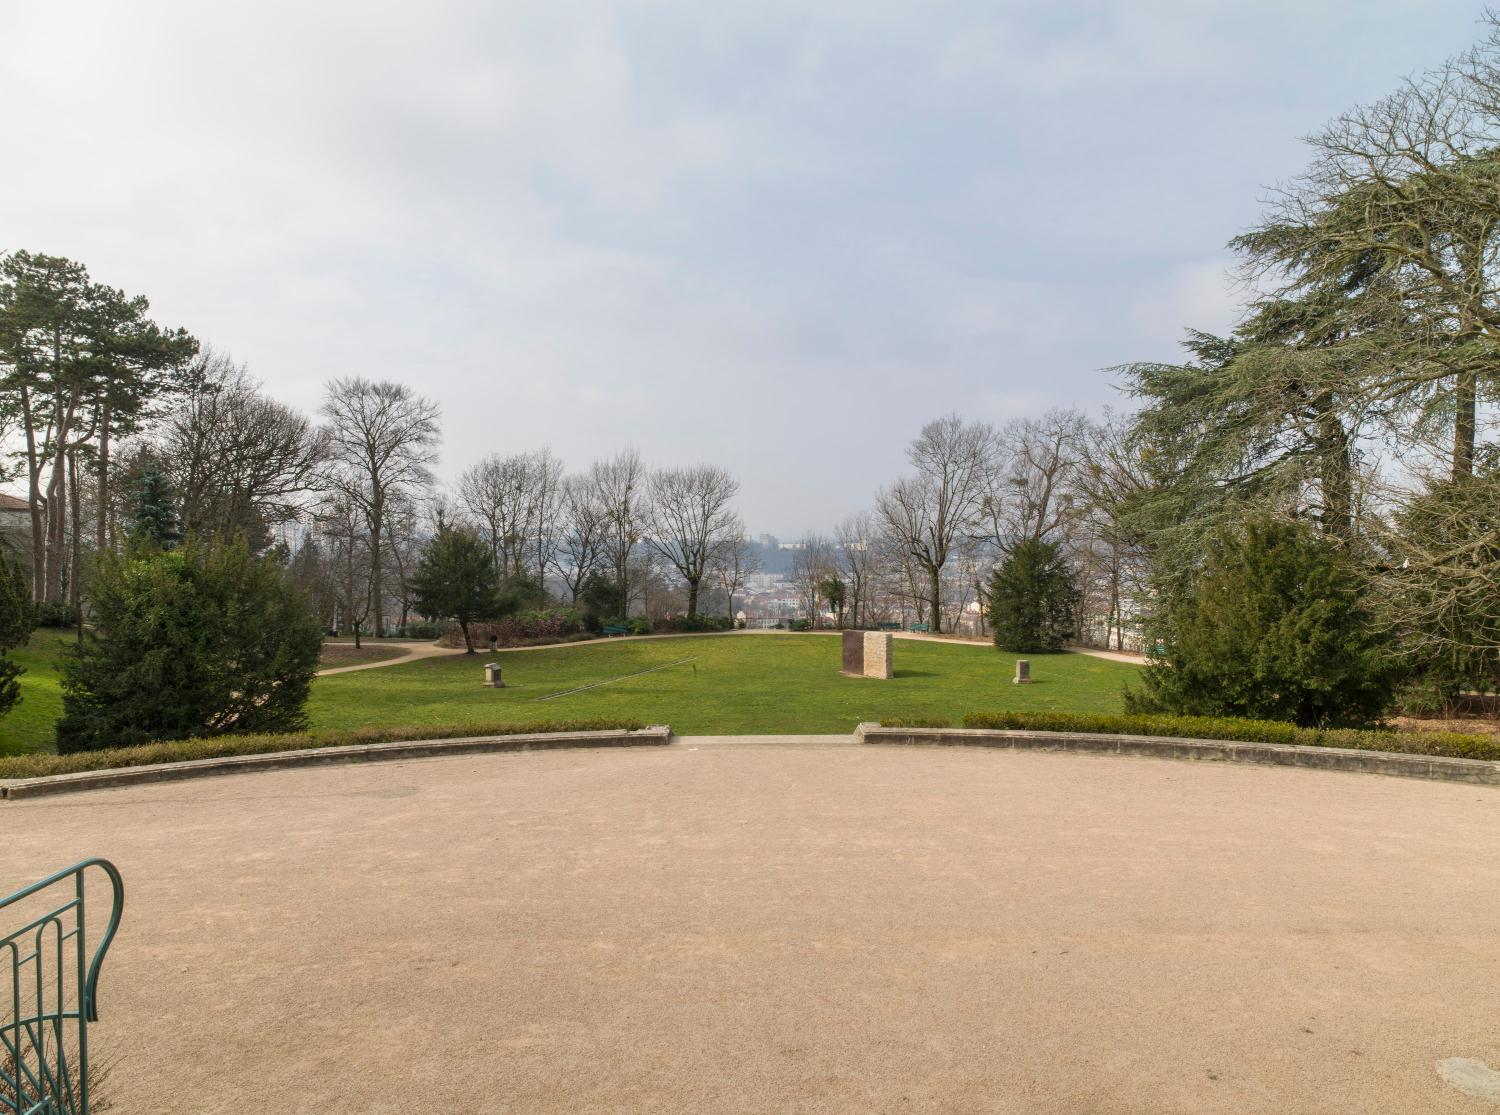 Demeure : villa Gillet actuellement parc public de la Cerisaie